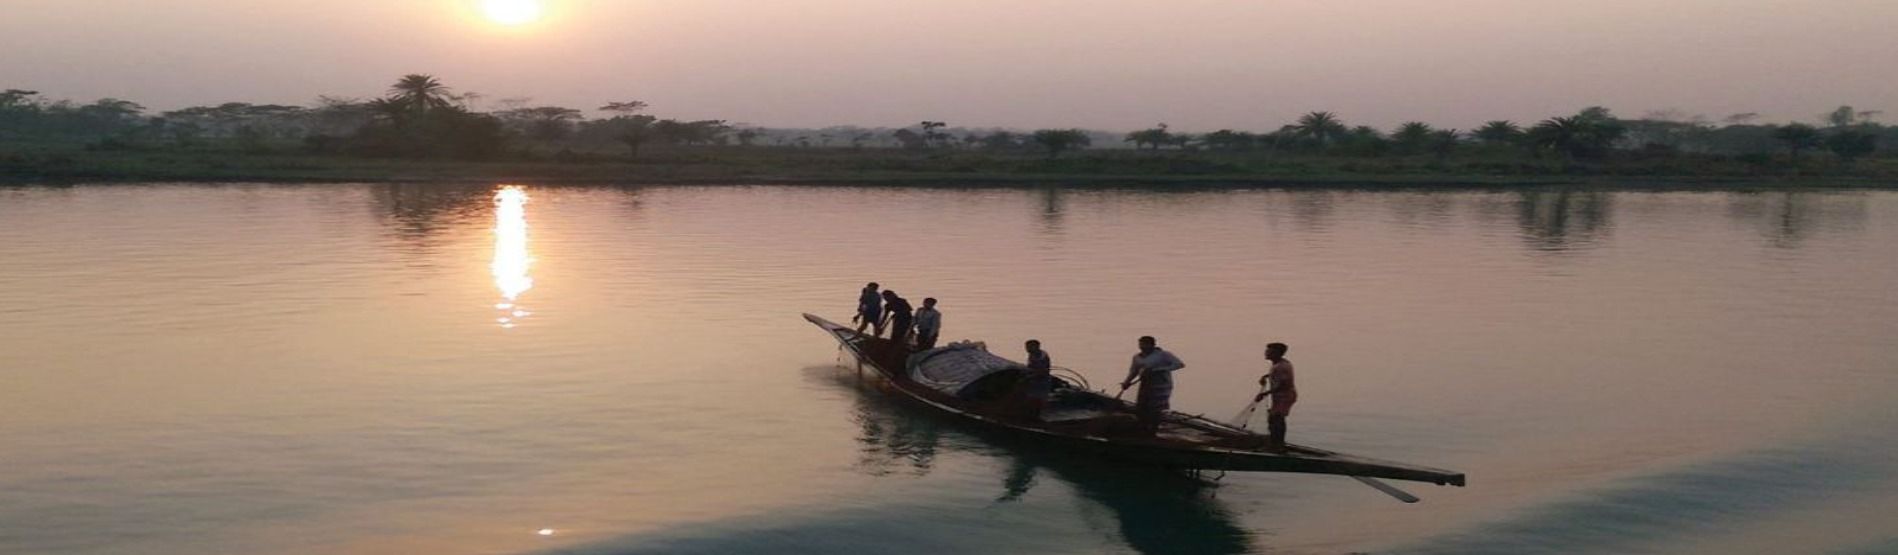 Boat at sunset, Bangladesh